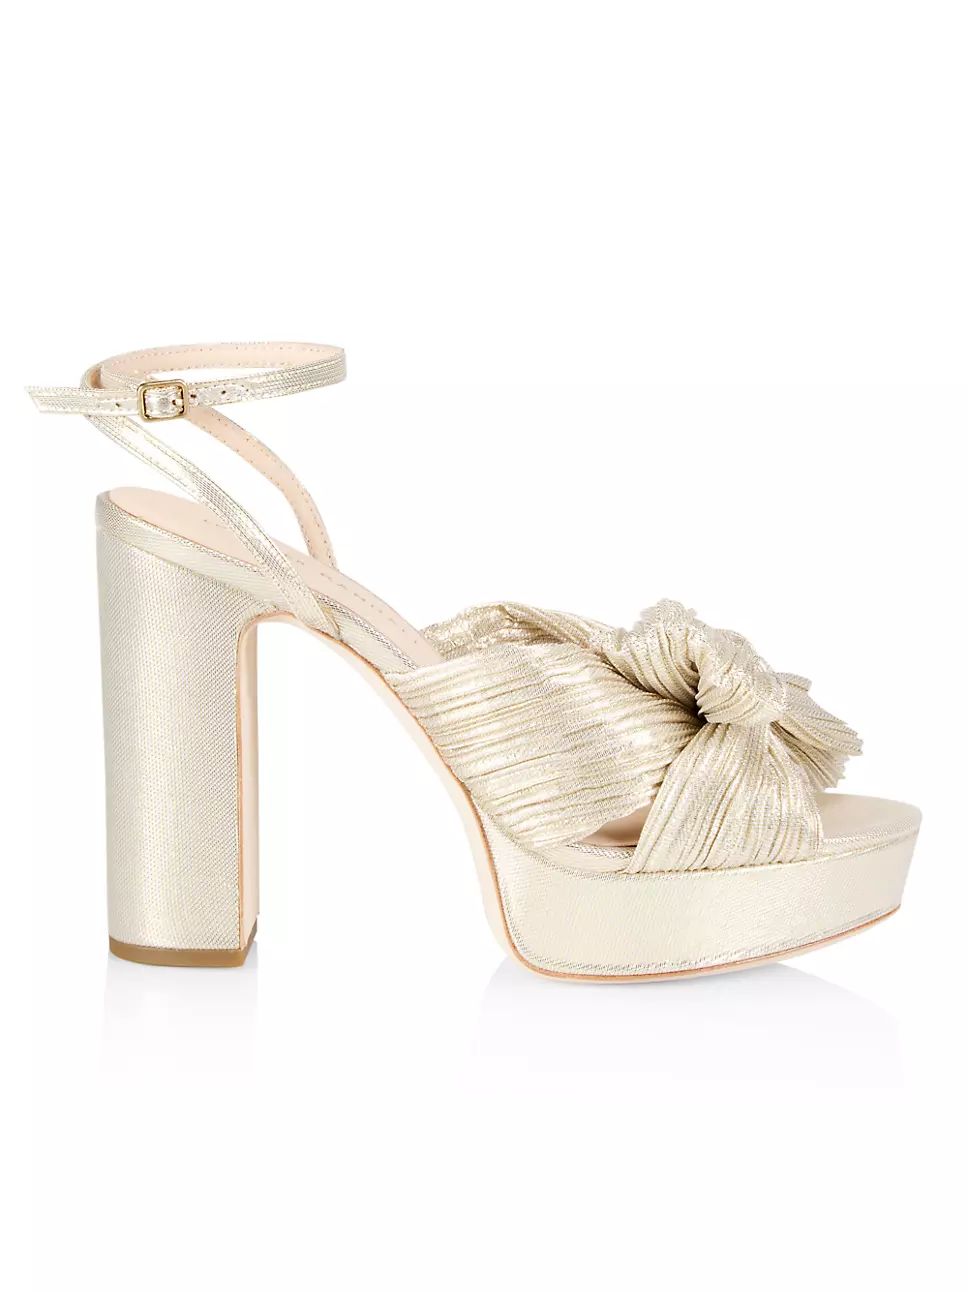 Natalia Pleated Platform Sandals | Saks Fifth Avenue